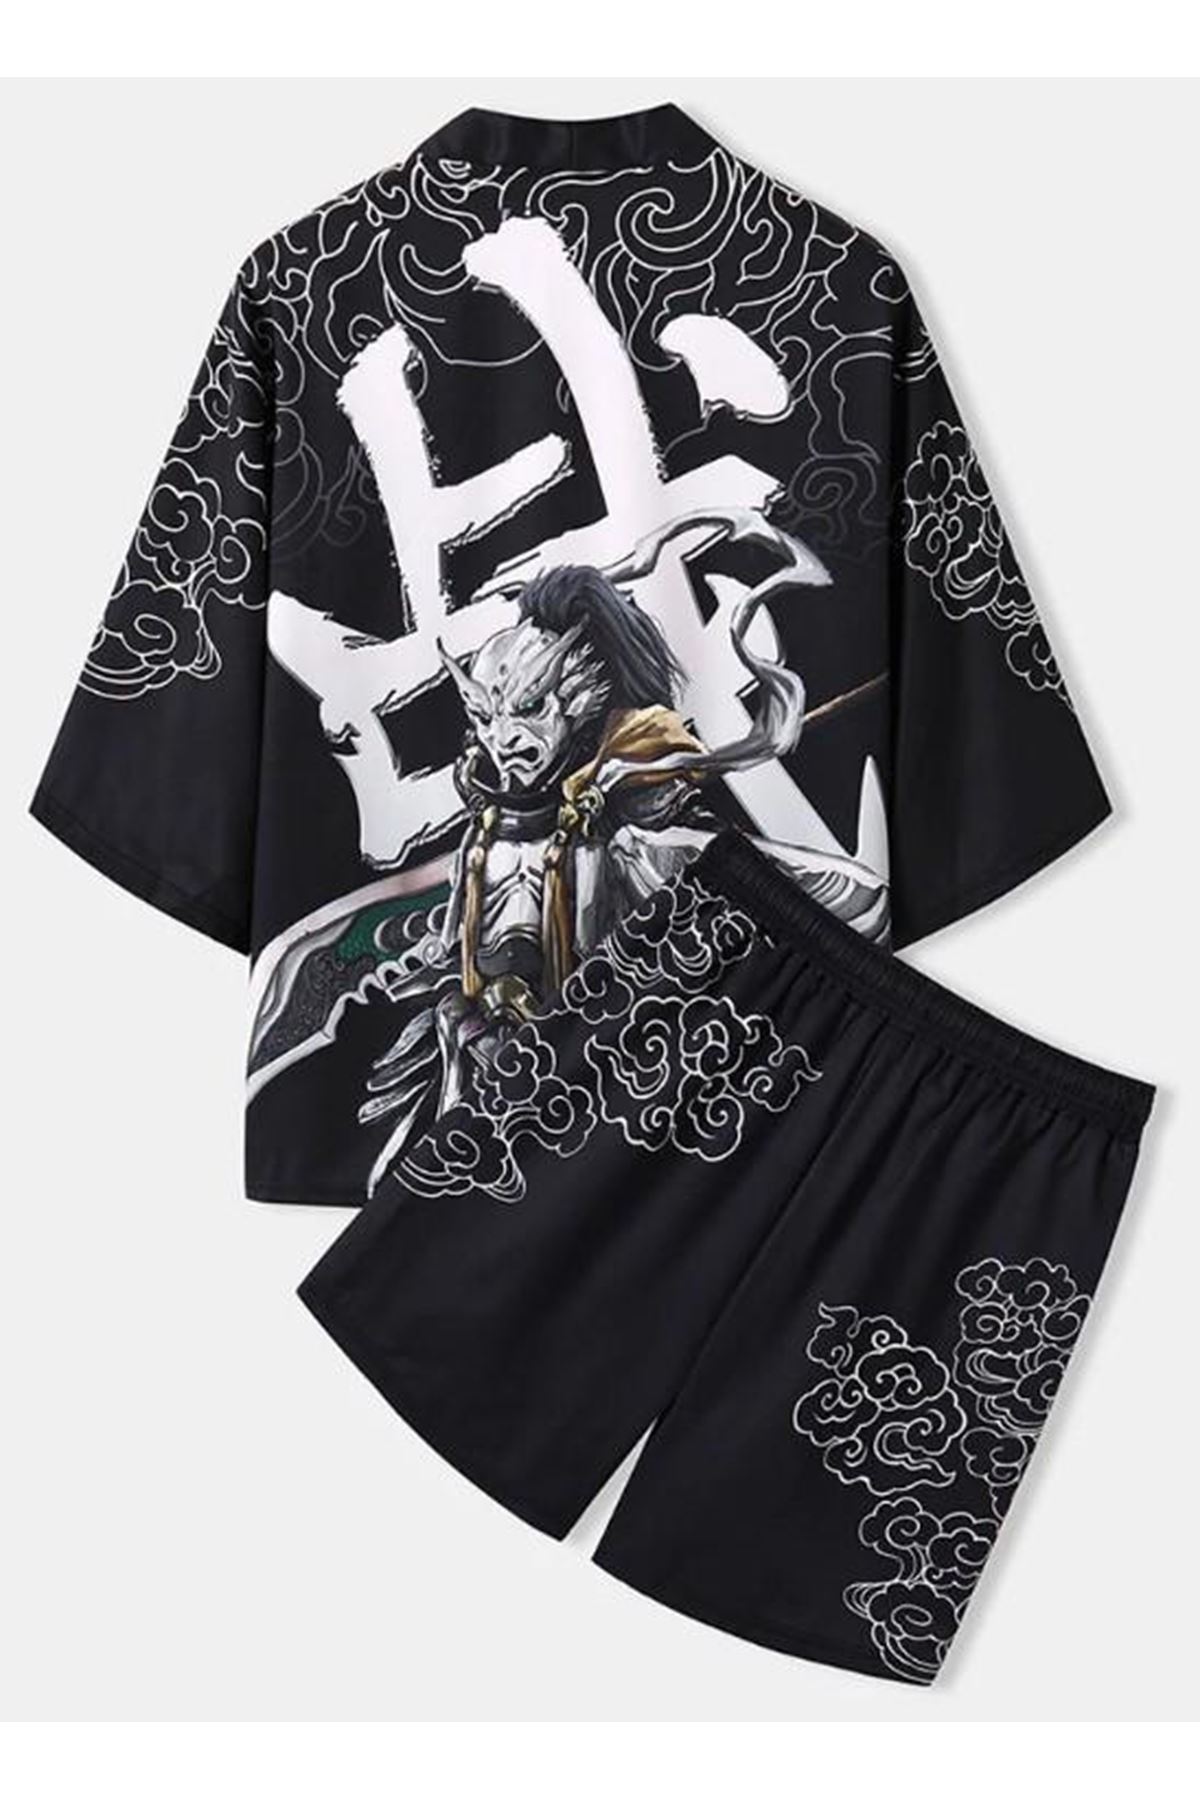 Japon Kadın/Erkek/Unisex/Oversize Siyah/Bej/Kırmızı Kimono-Siyah 1014